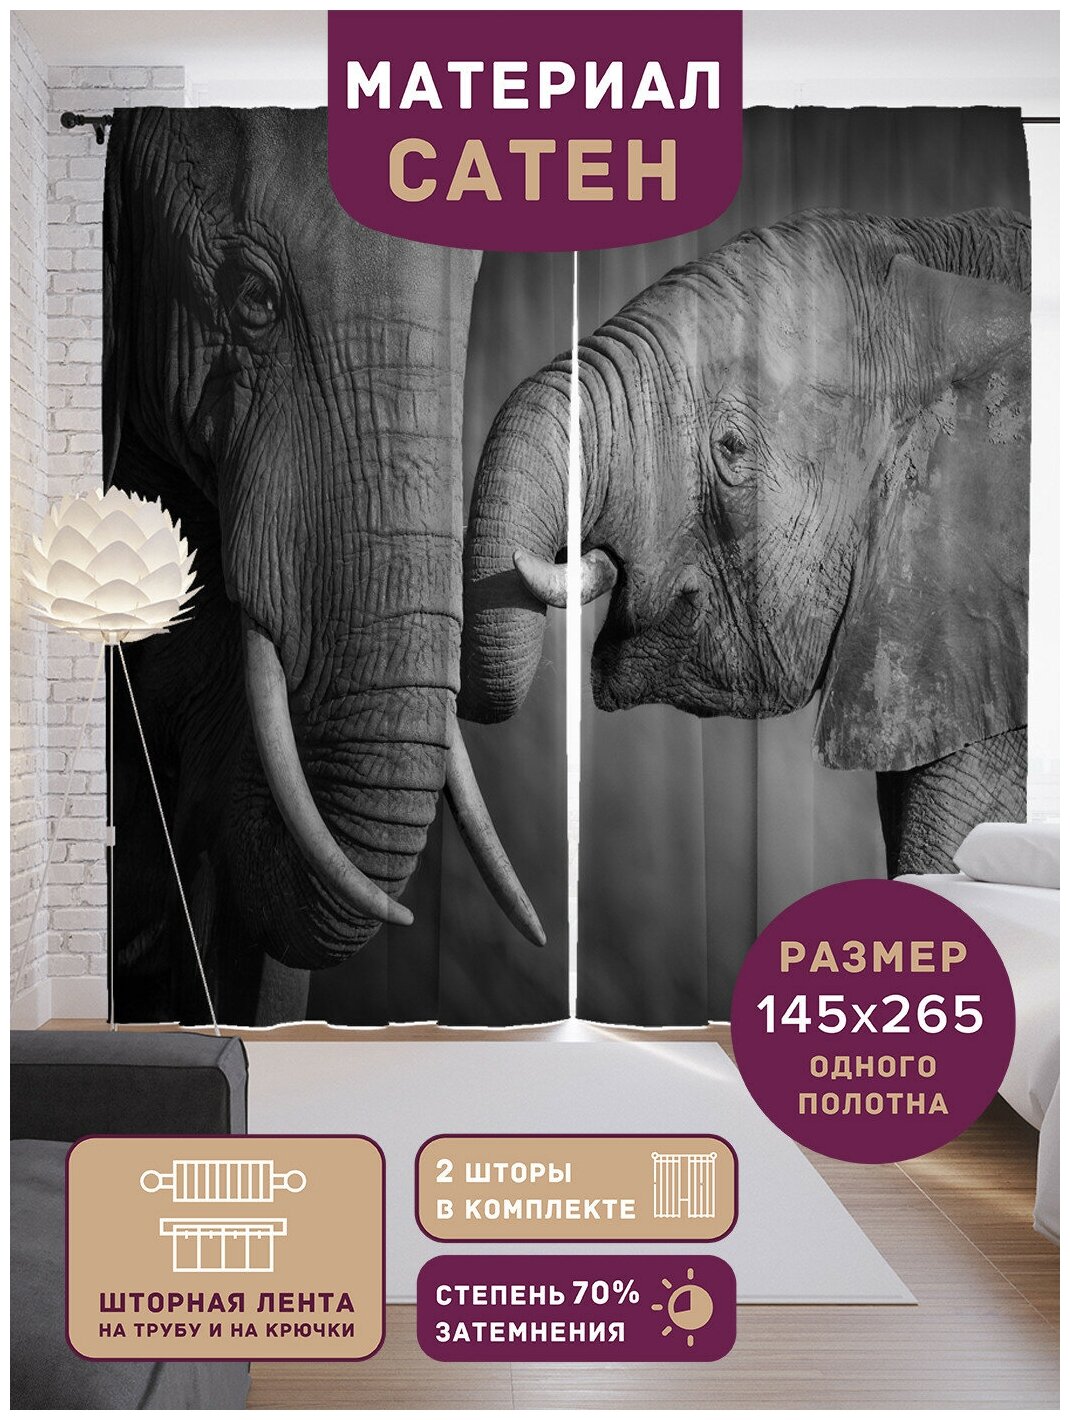 Шторы, фотошторы JoyArty Семья слонов из ткани сатен, 2 полотна шириной по 145 см, высота 265 см, шторная лента и крючки, степень затемнения 70